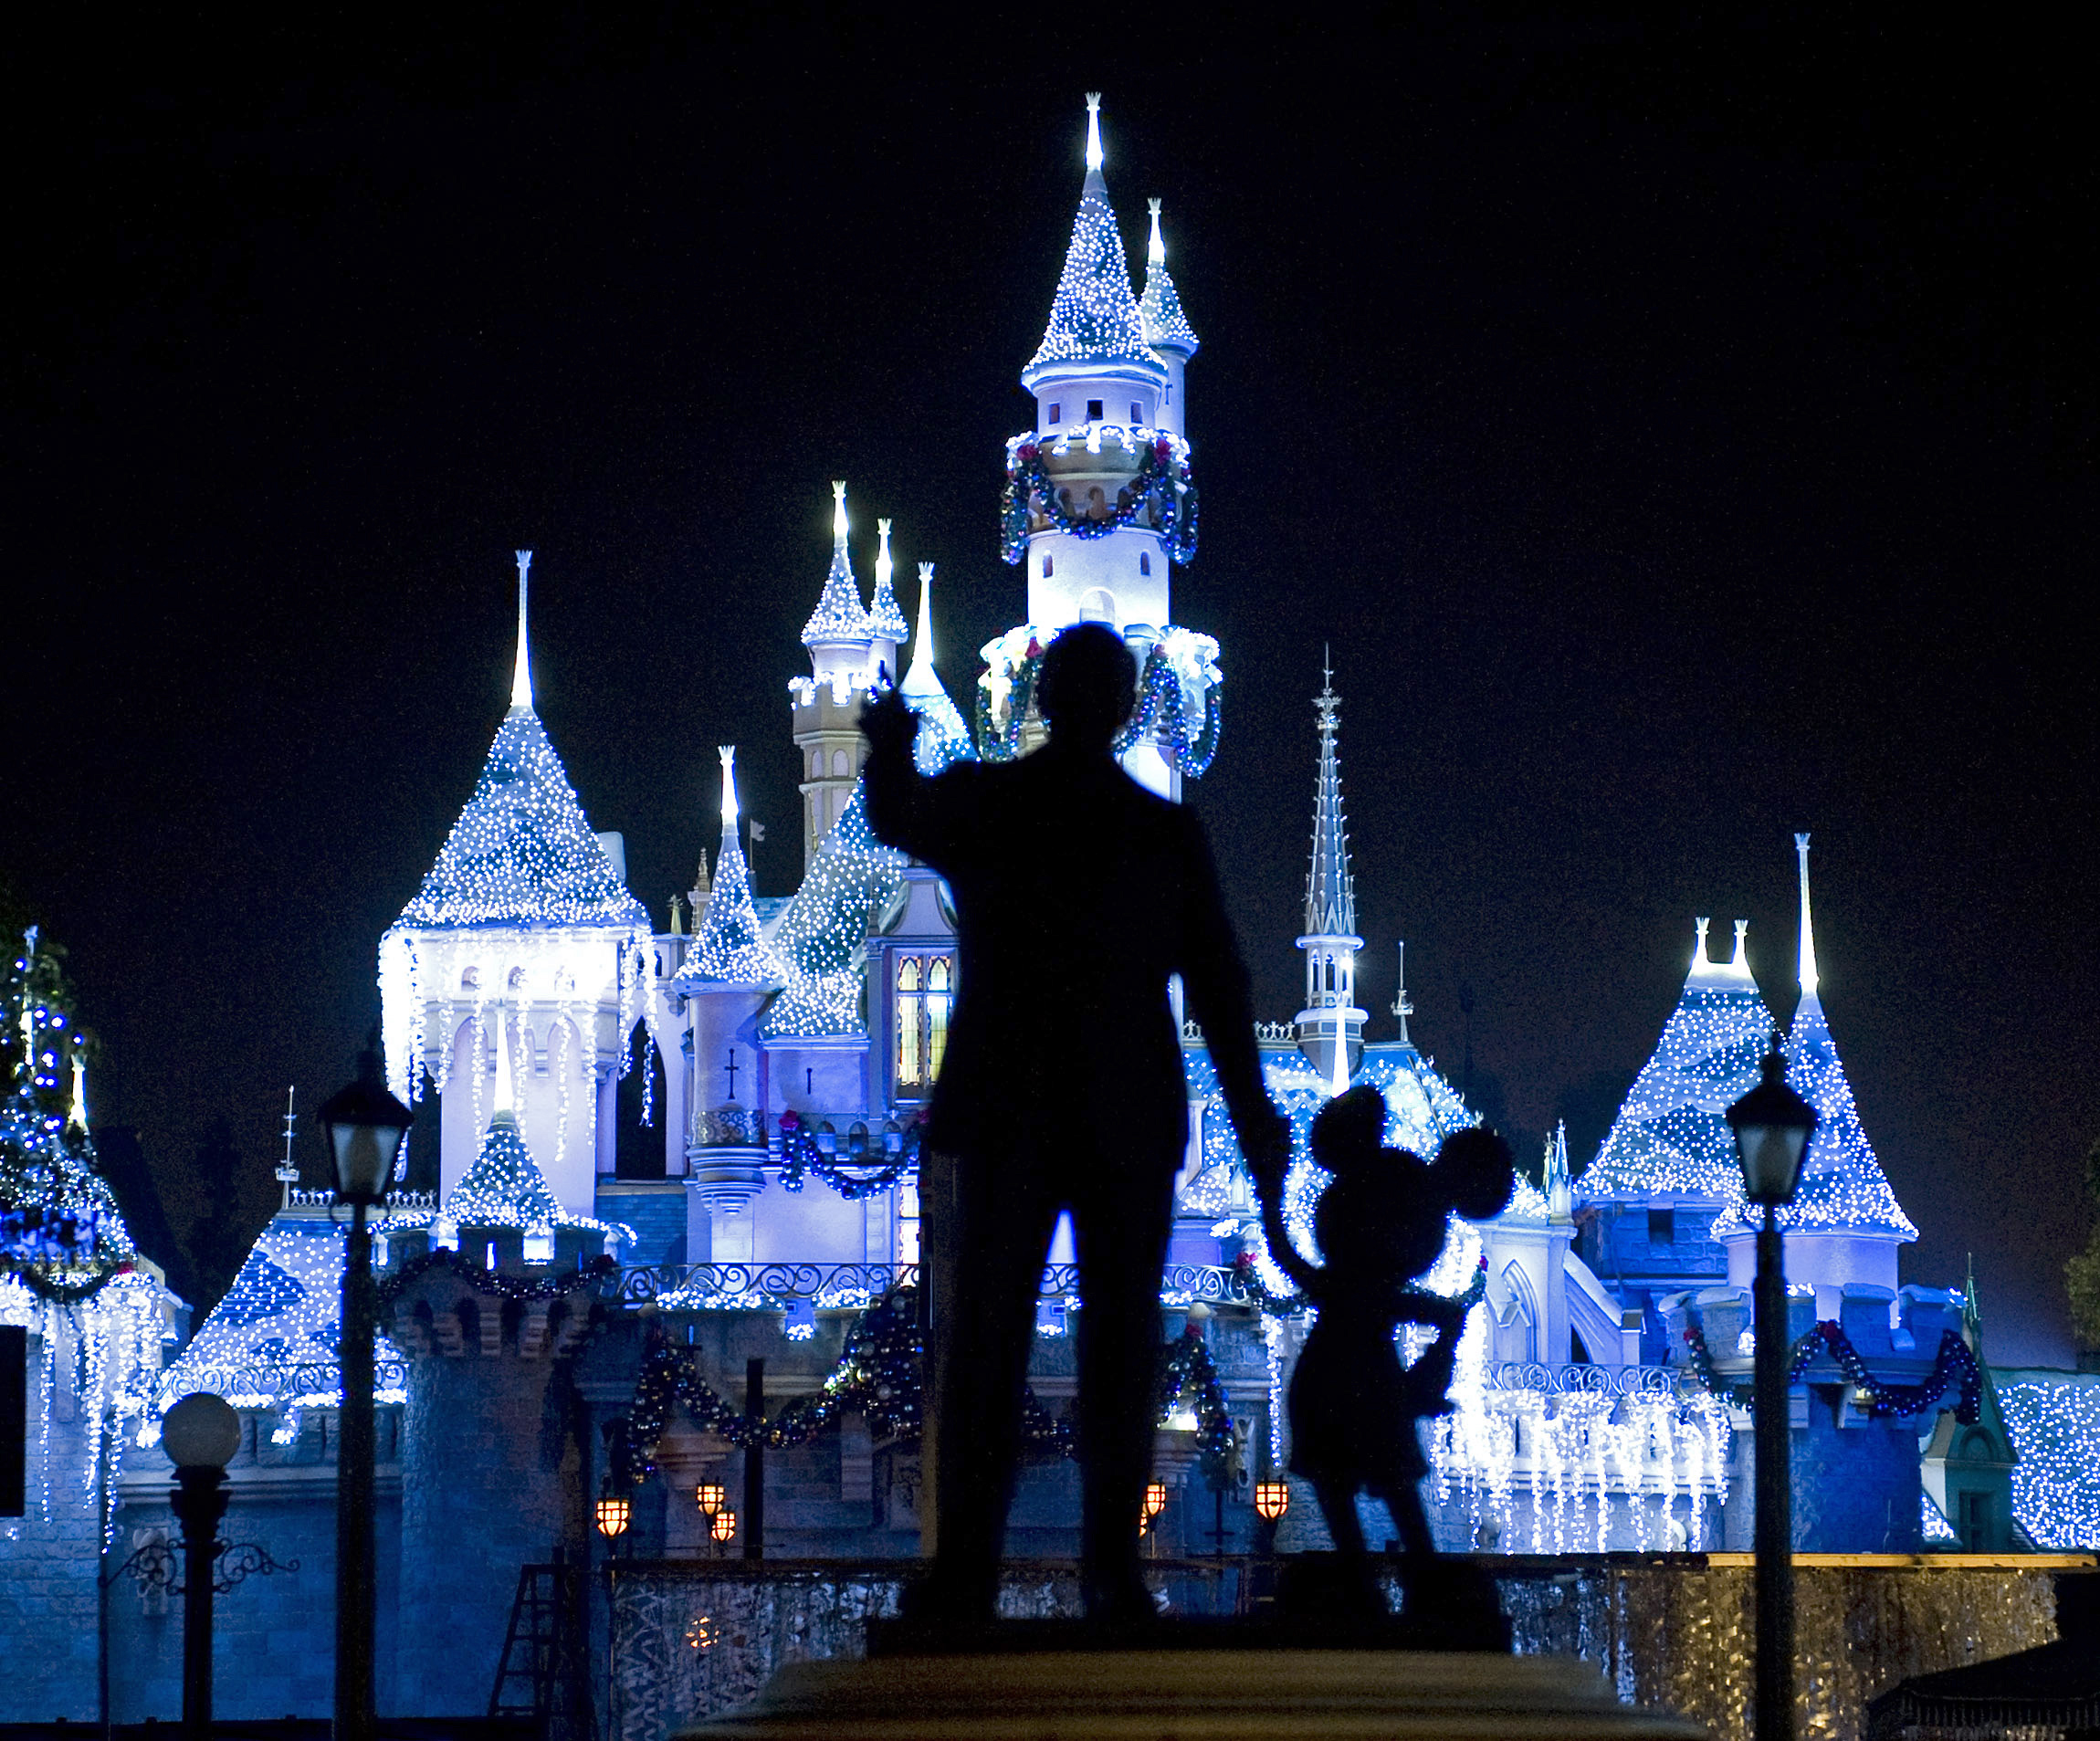 Disneyland in Anaheim, Calif.